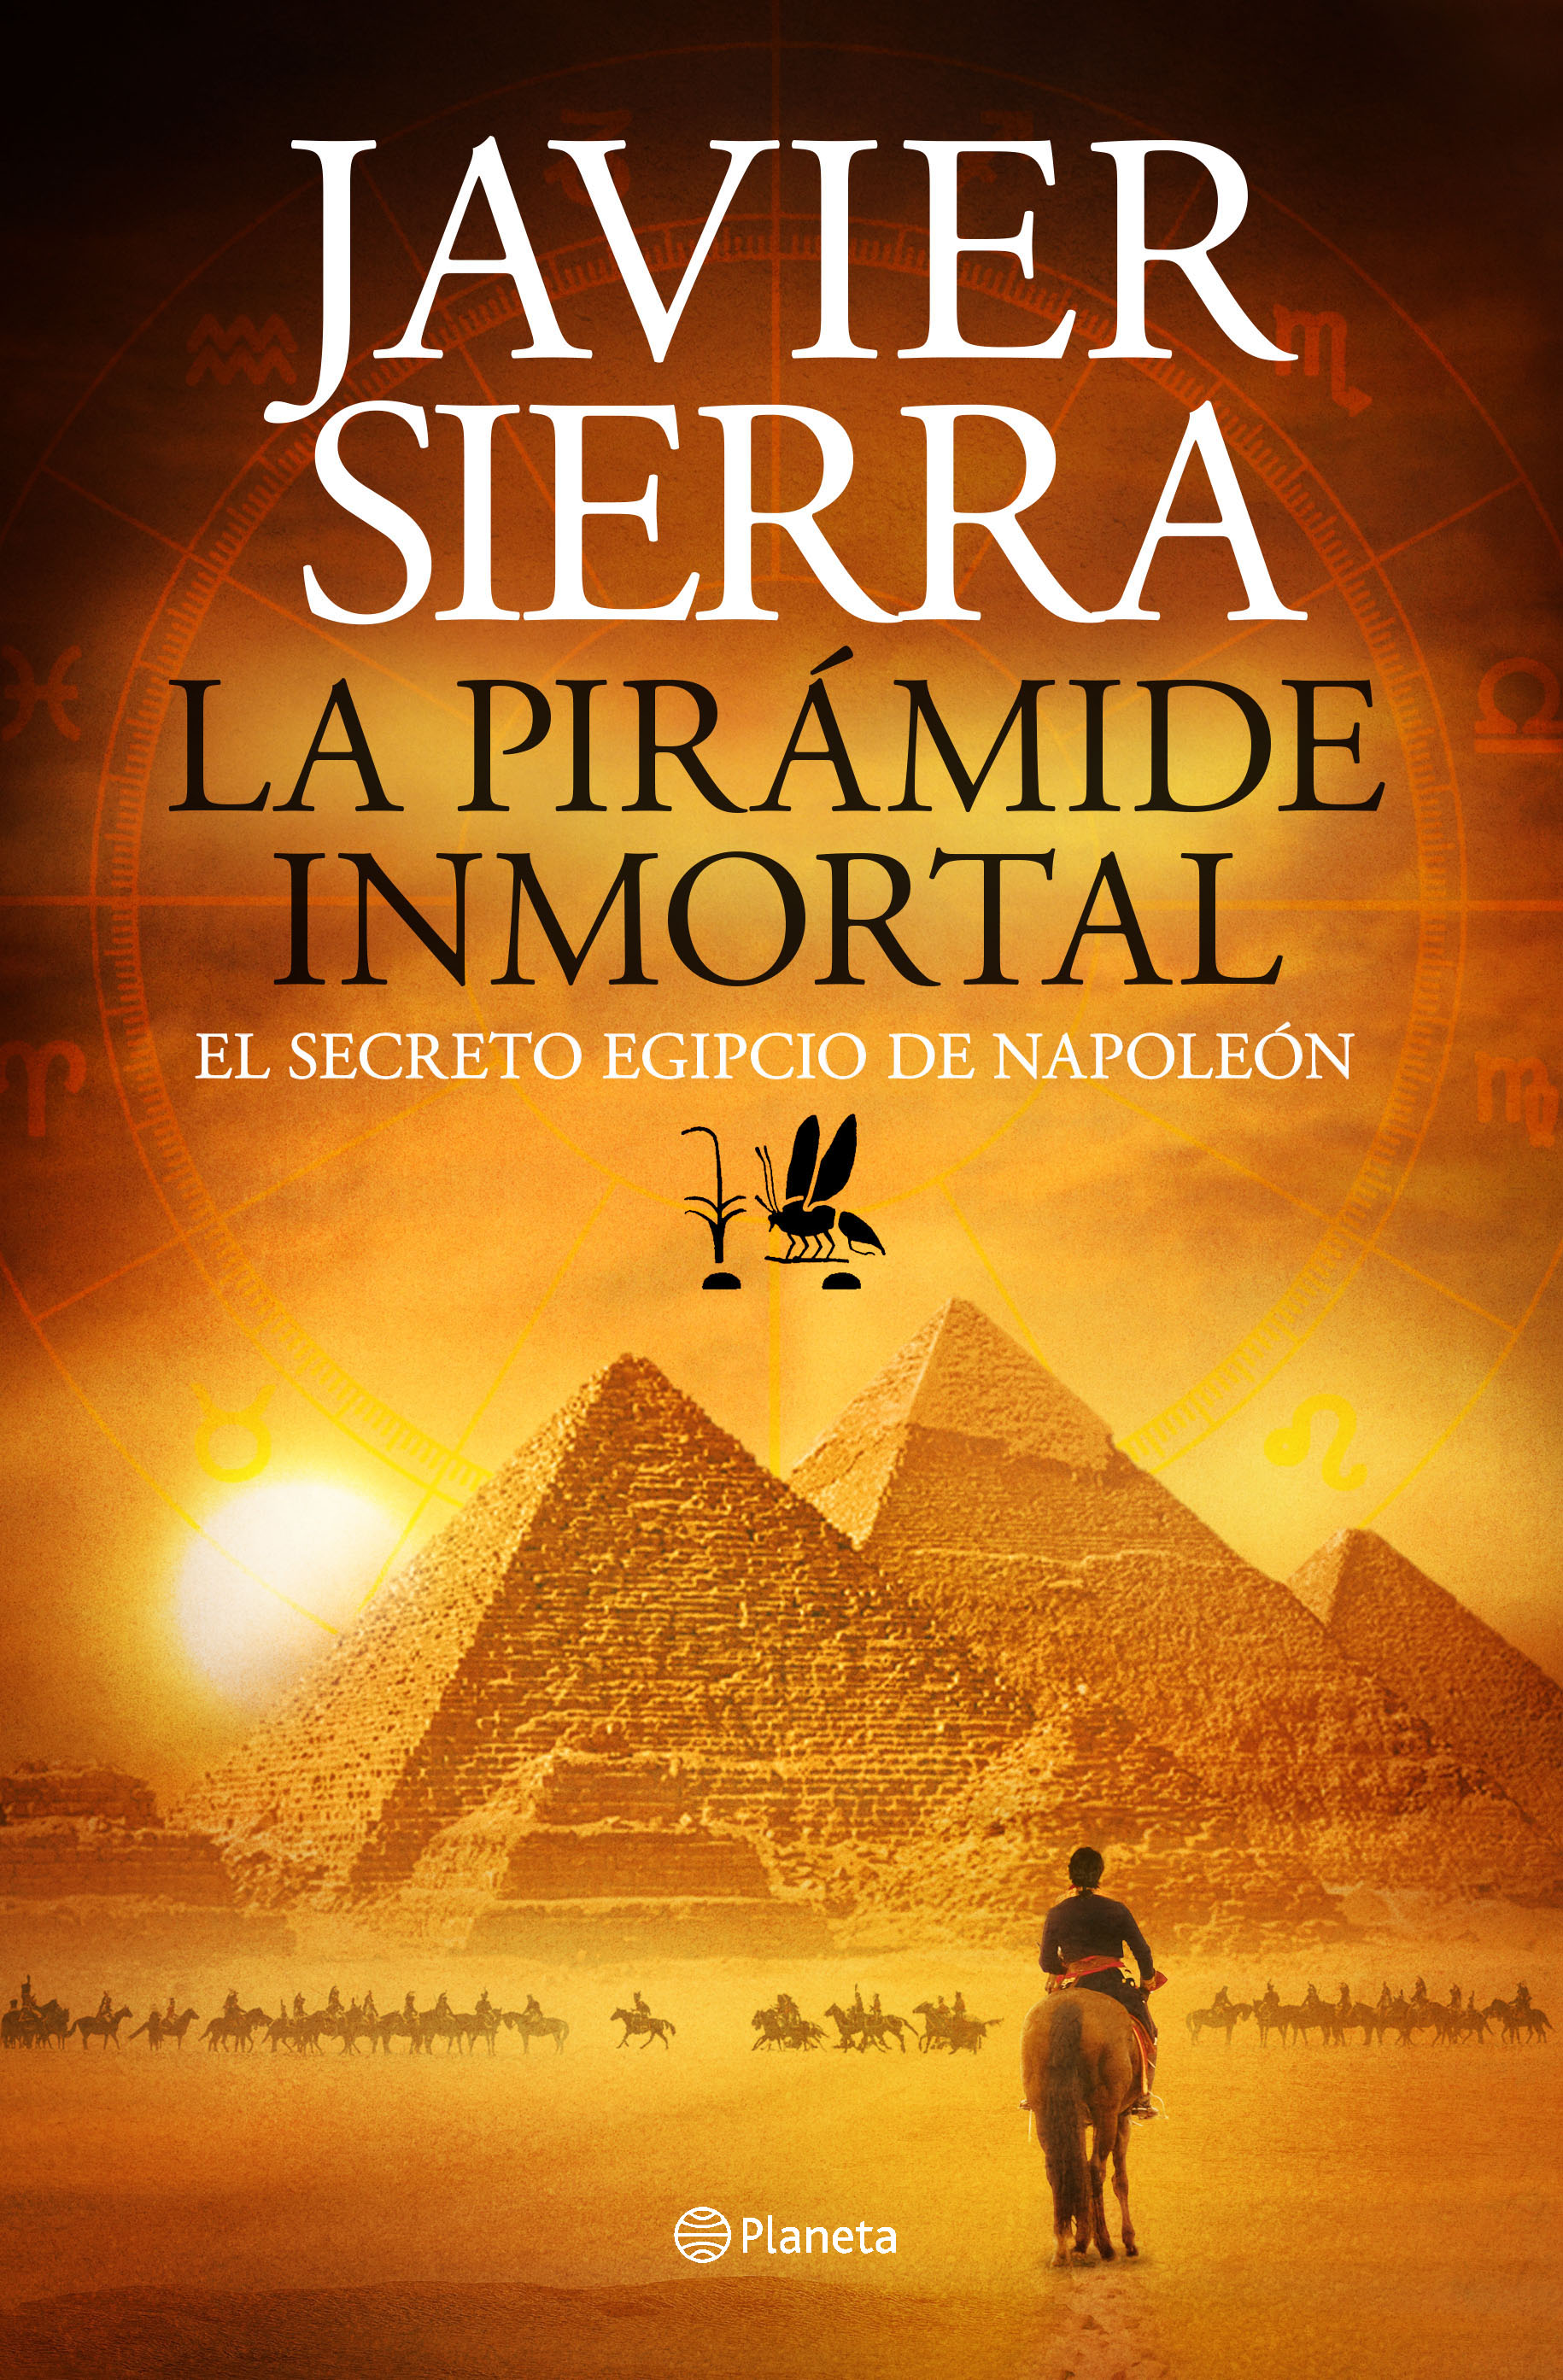 Presentación de "La pirámide inmortal"